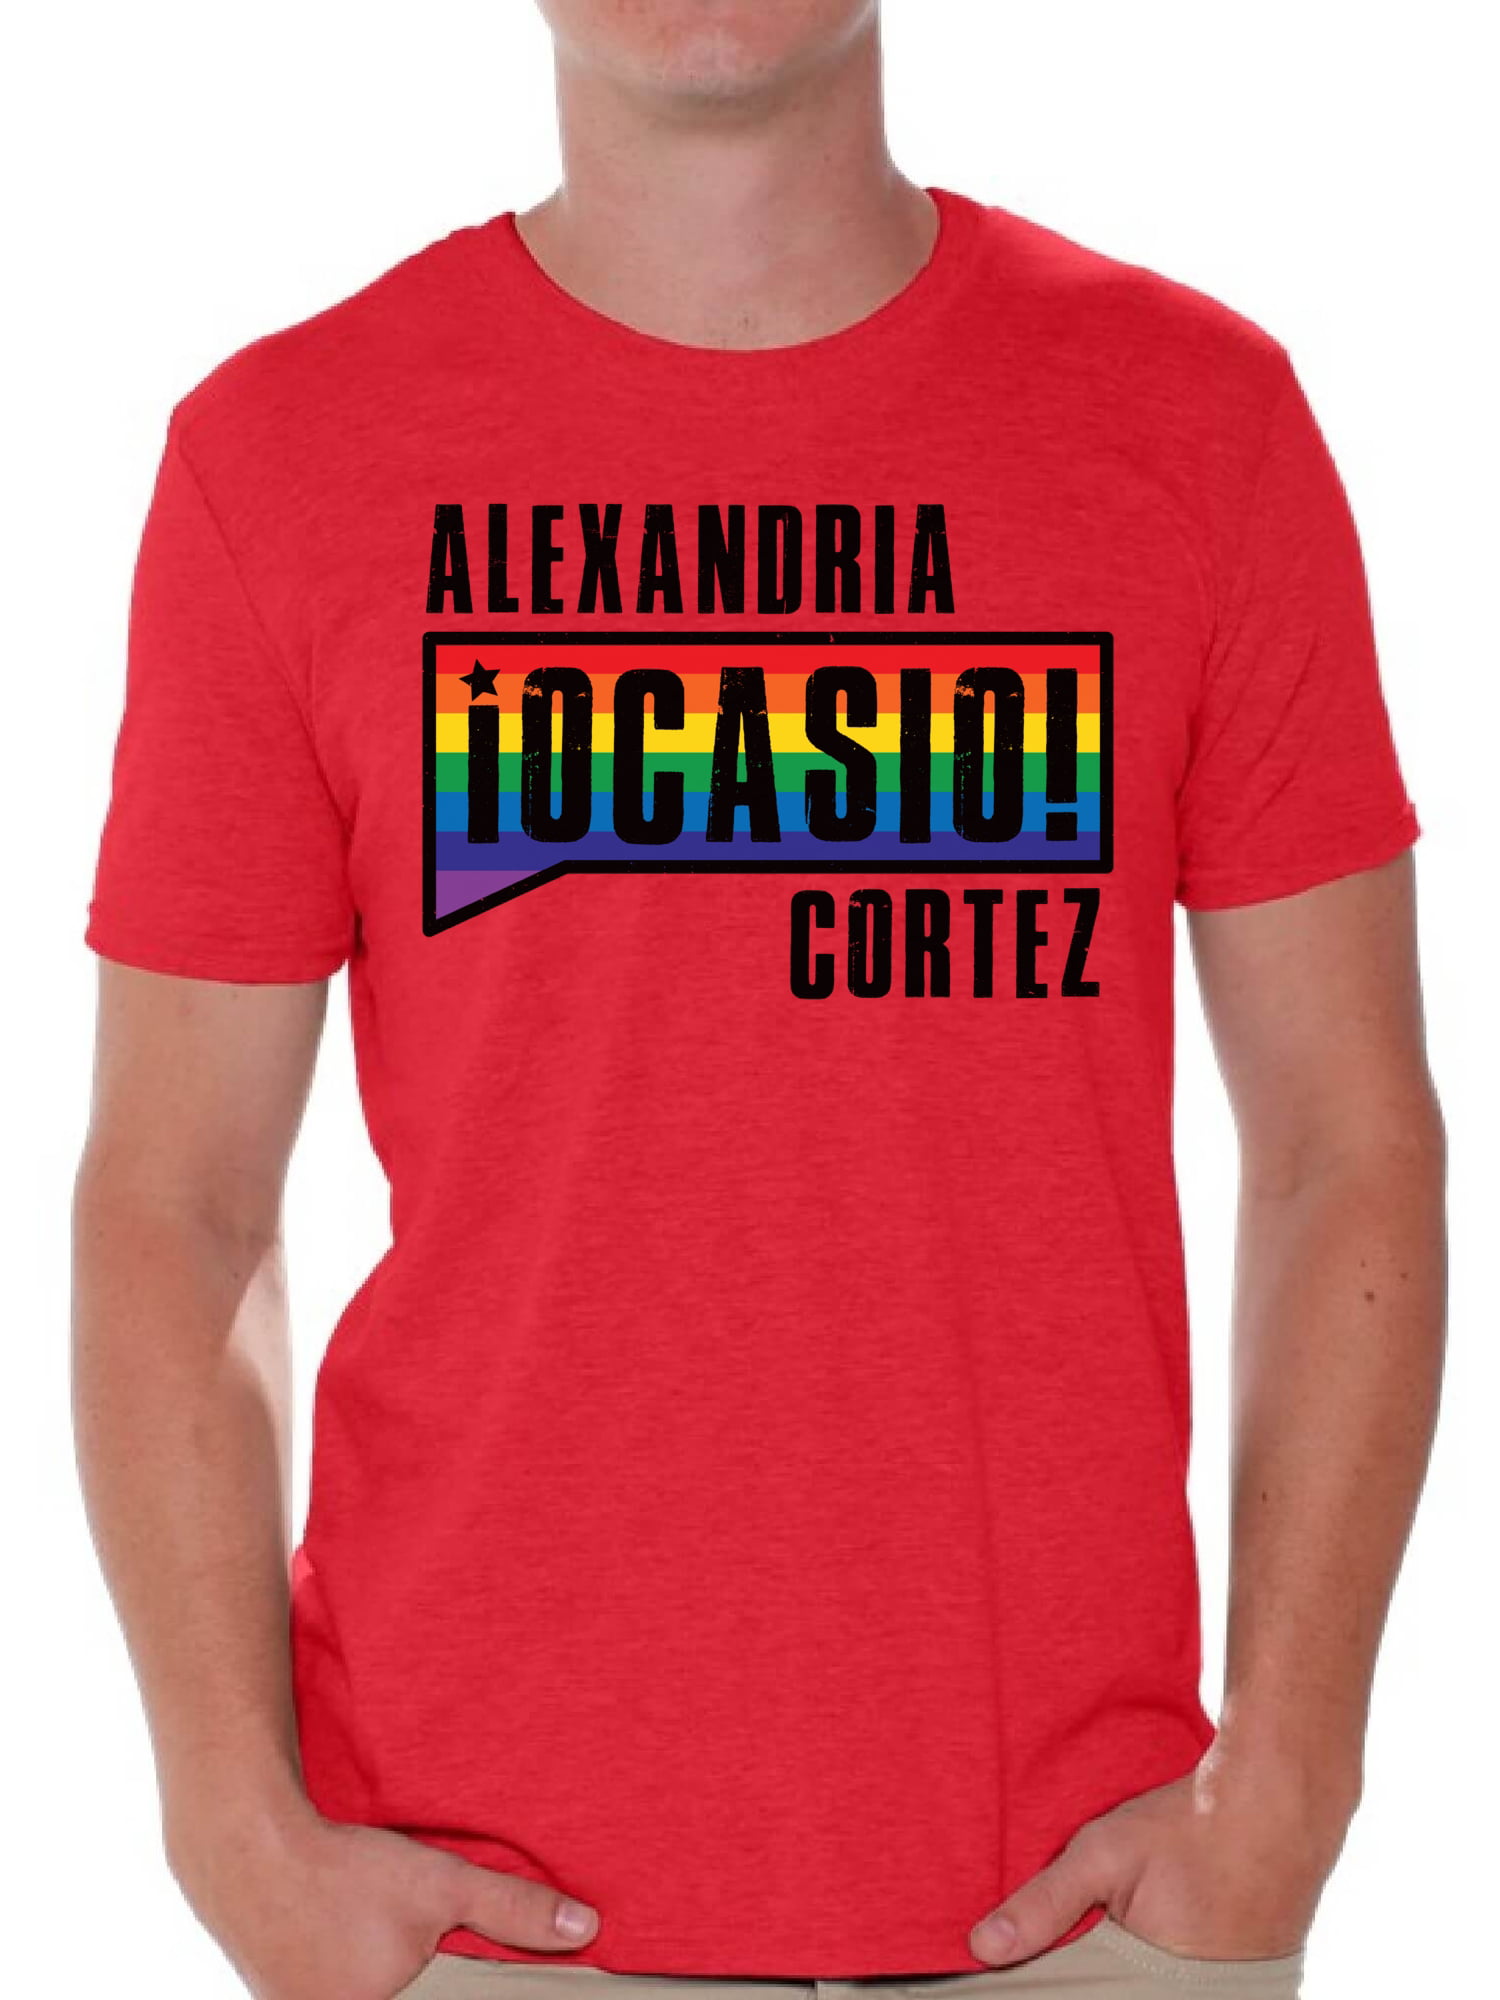 women power shirt,election 2020,empower women shirt,Make America a better place aoc shirt aoc+3 shirt